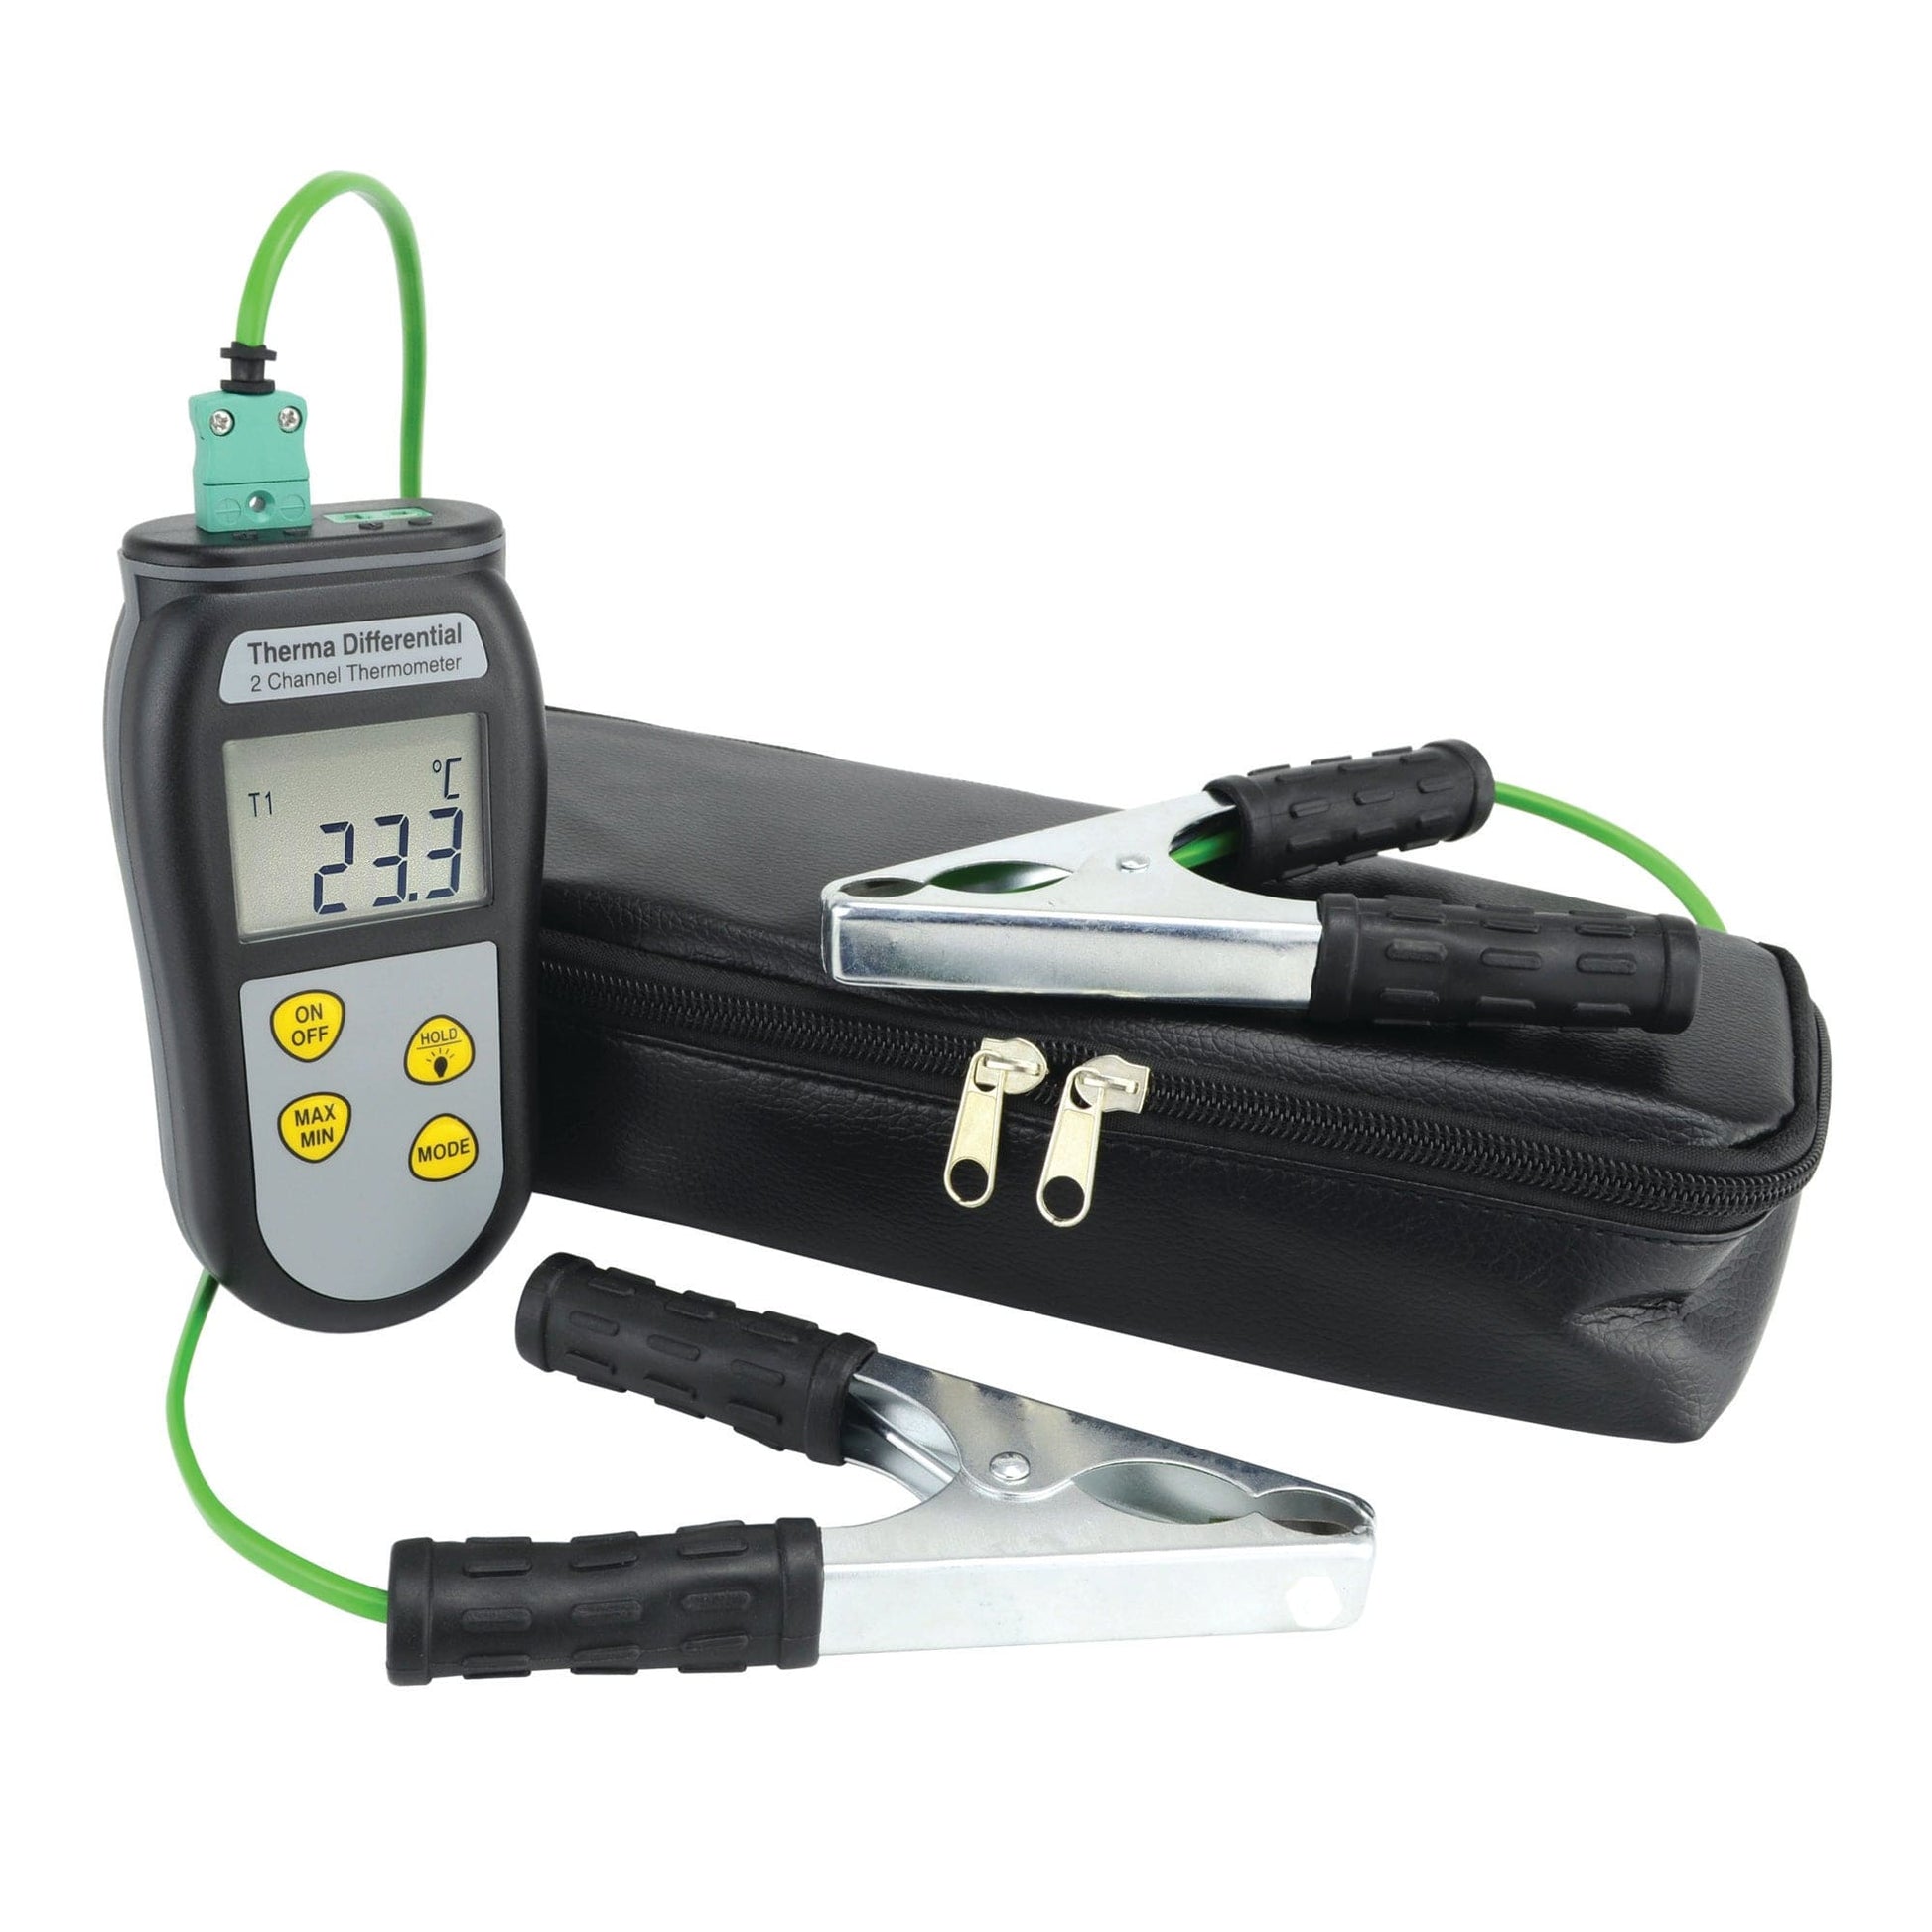 une mallette noire avec un voltmètre digital et une pince, le Kit de thermomètre HVAC économique de Thermometre.fr.